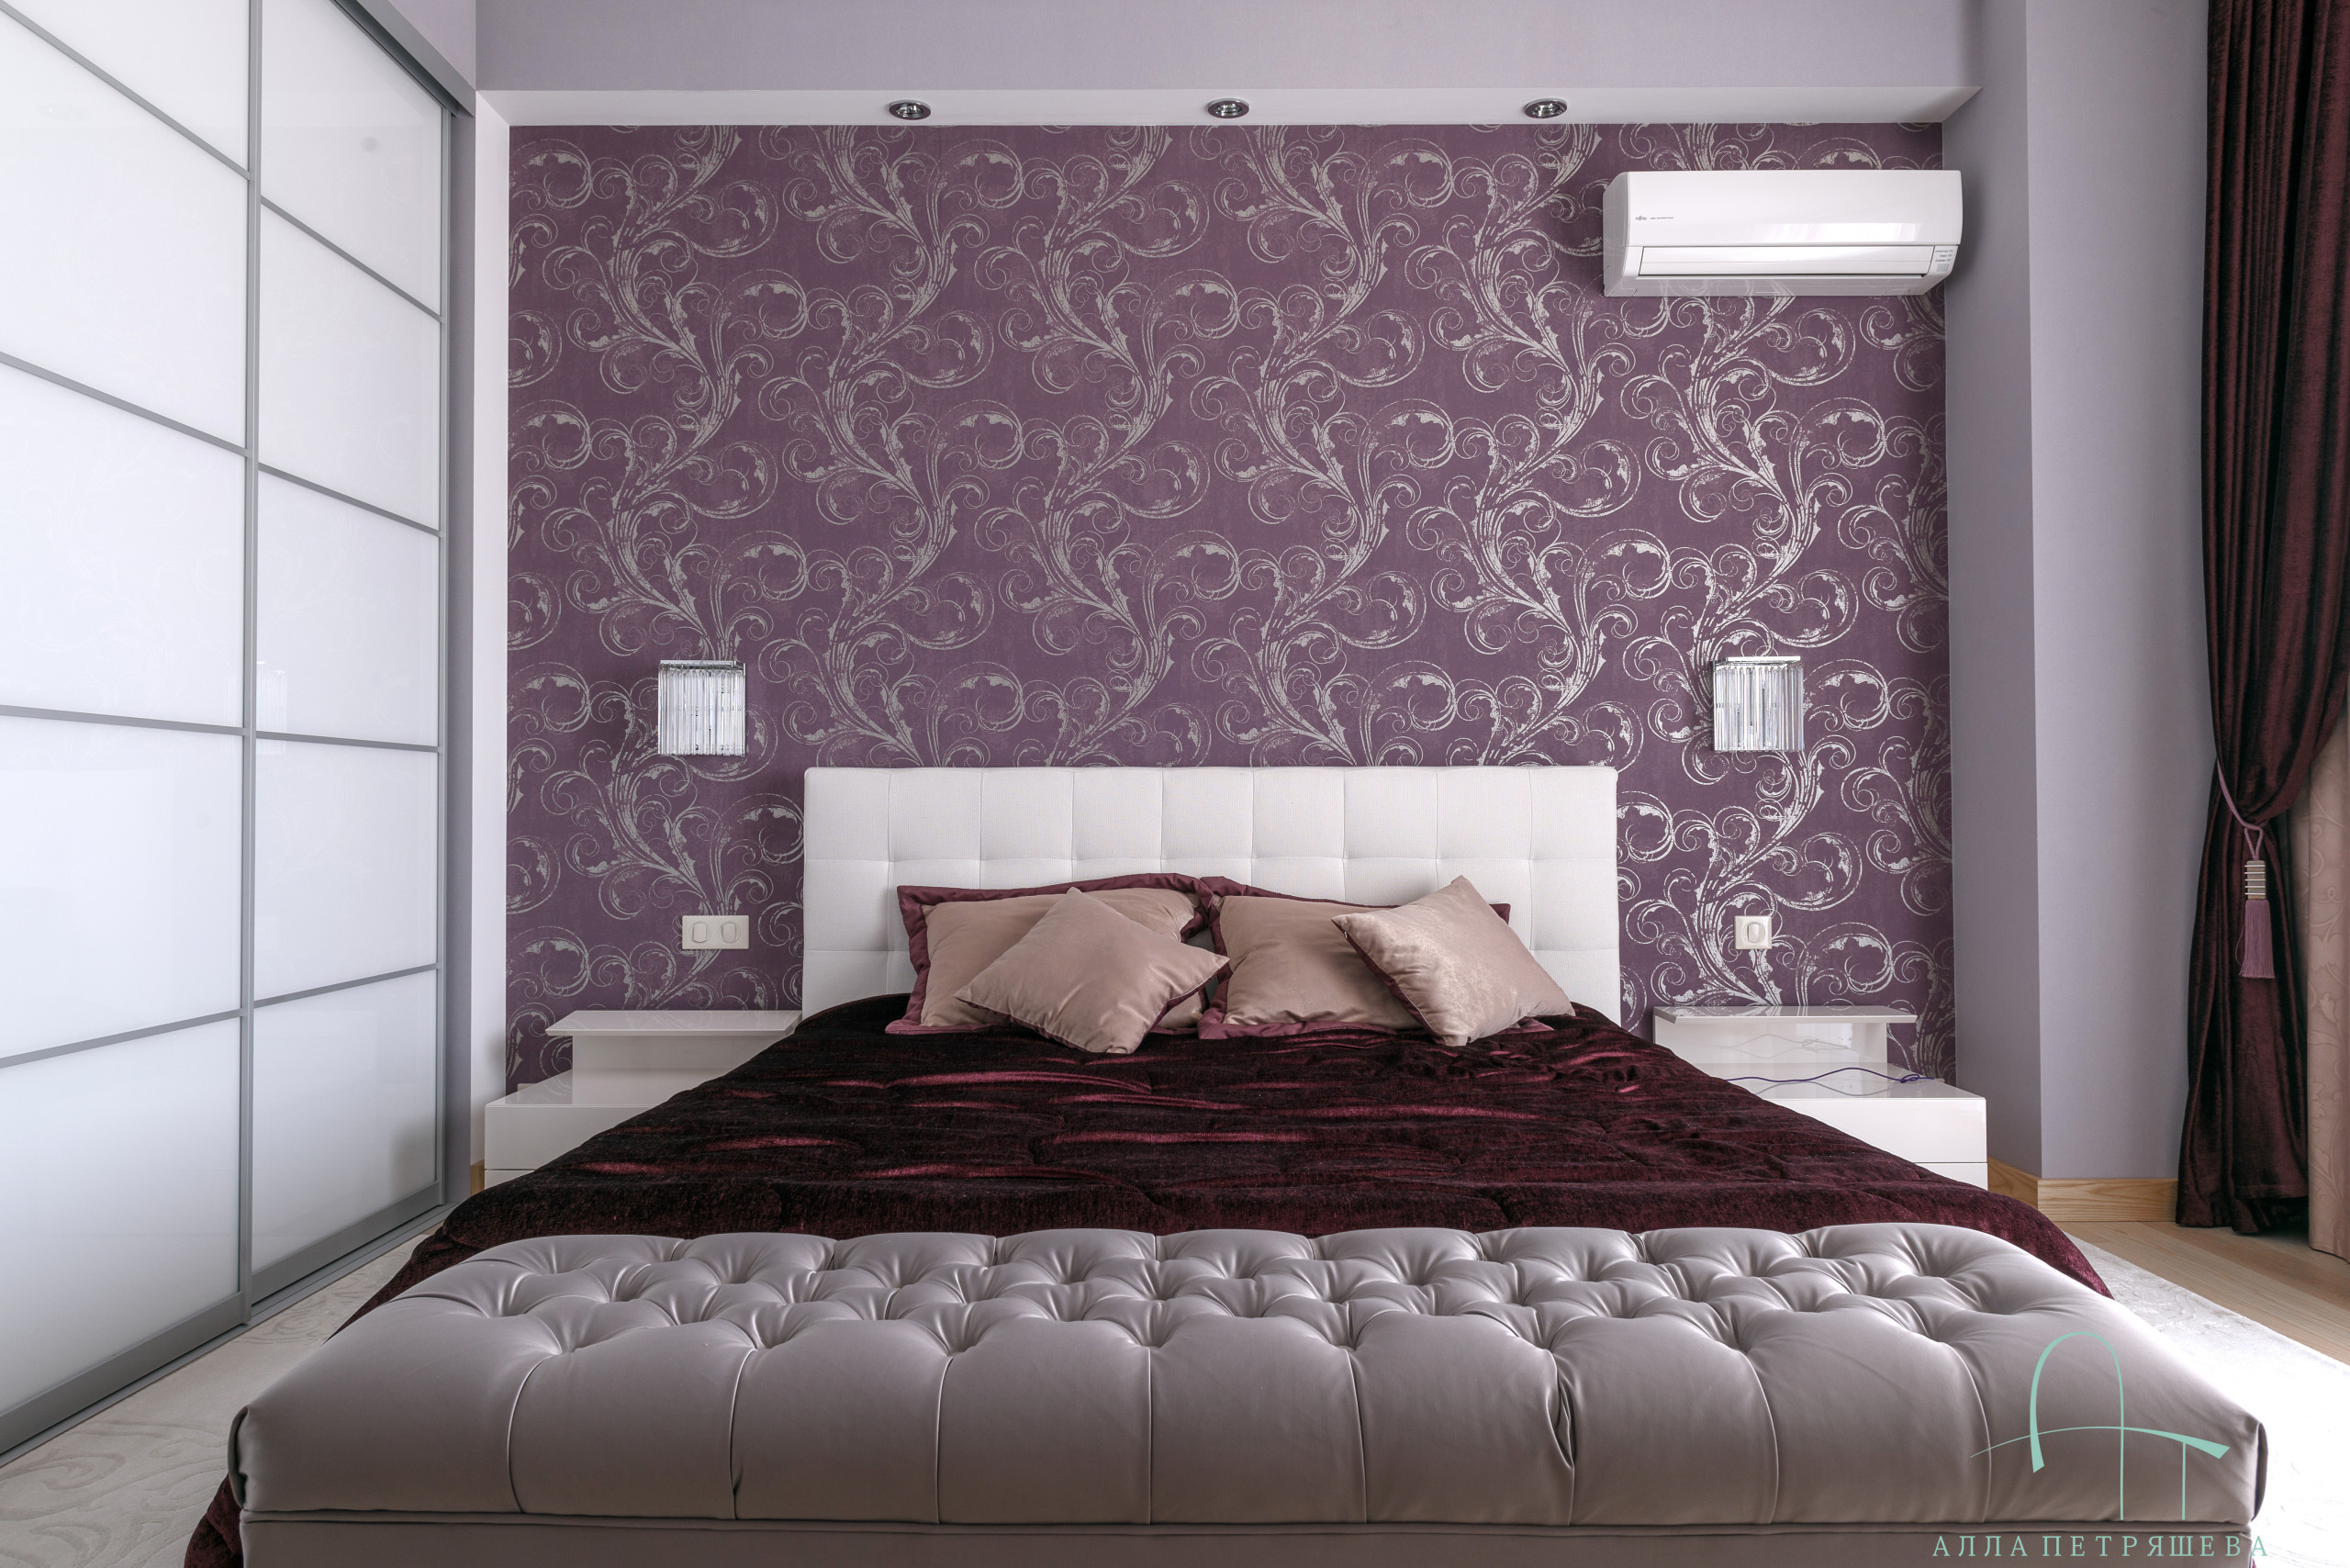 スピーカー 潜在的な 講堂 寝室 壁紙 紫 特別に 成果 どこでも